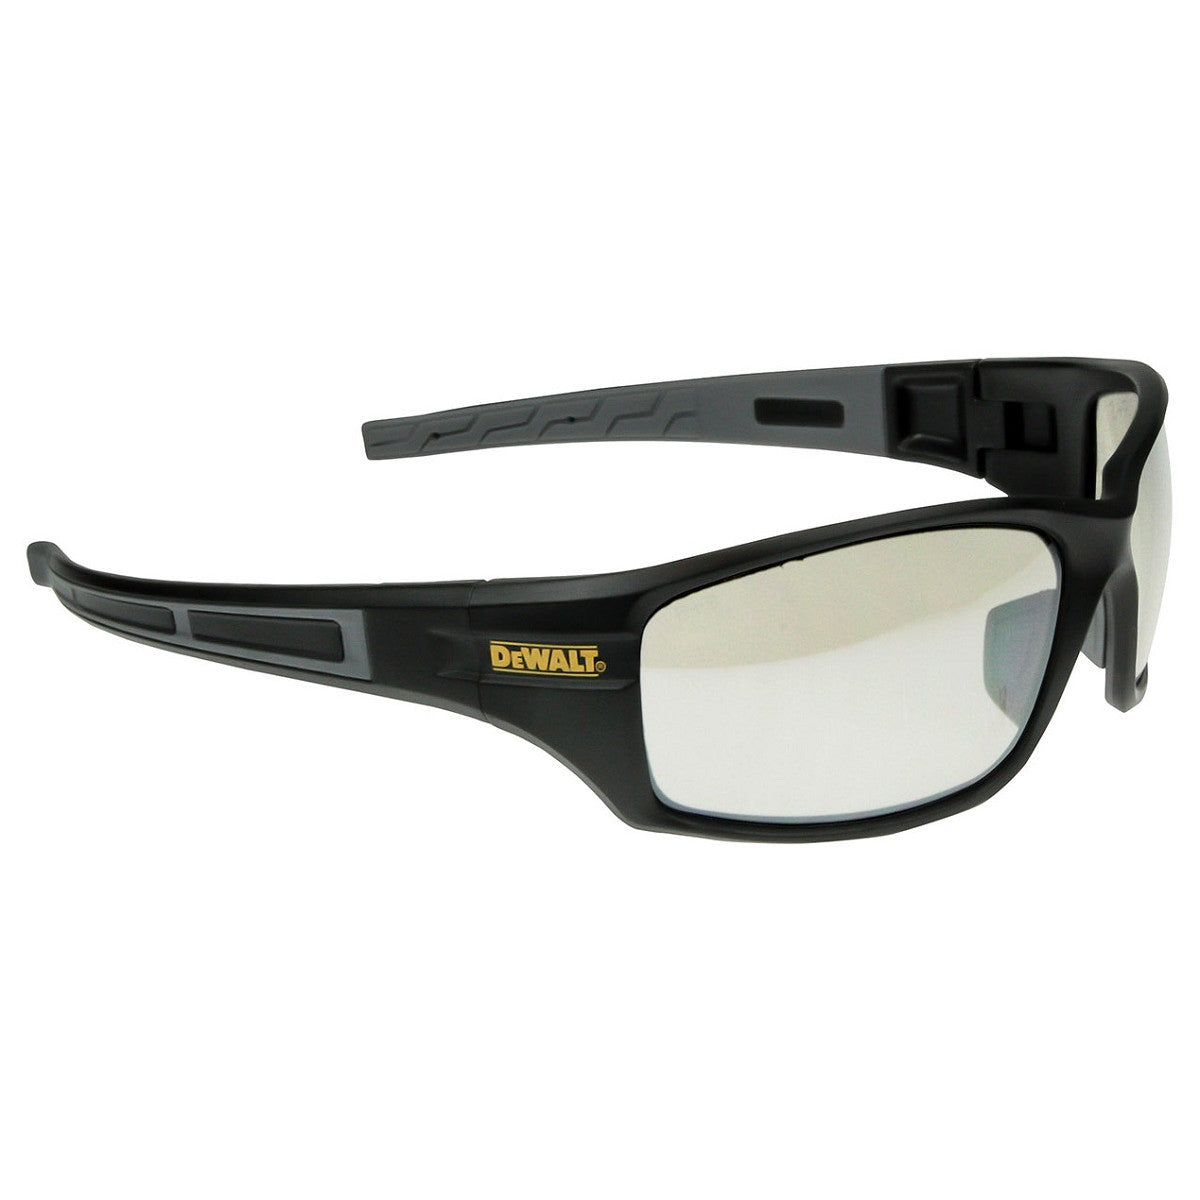 Dewalt Auger Safety Glasses